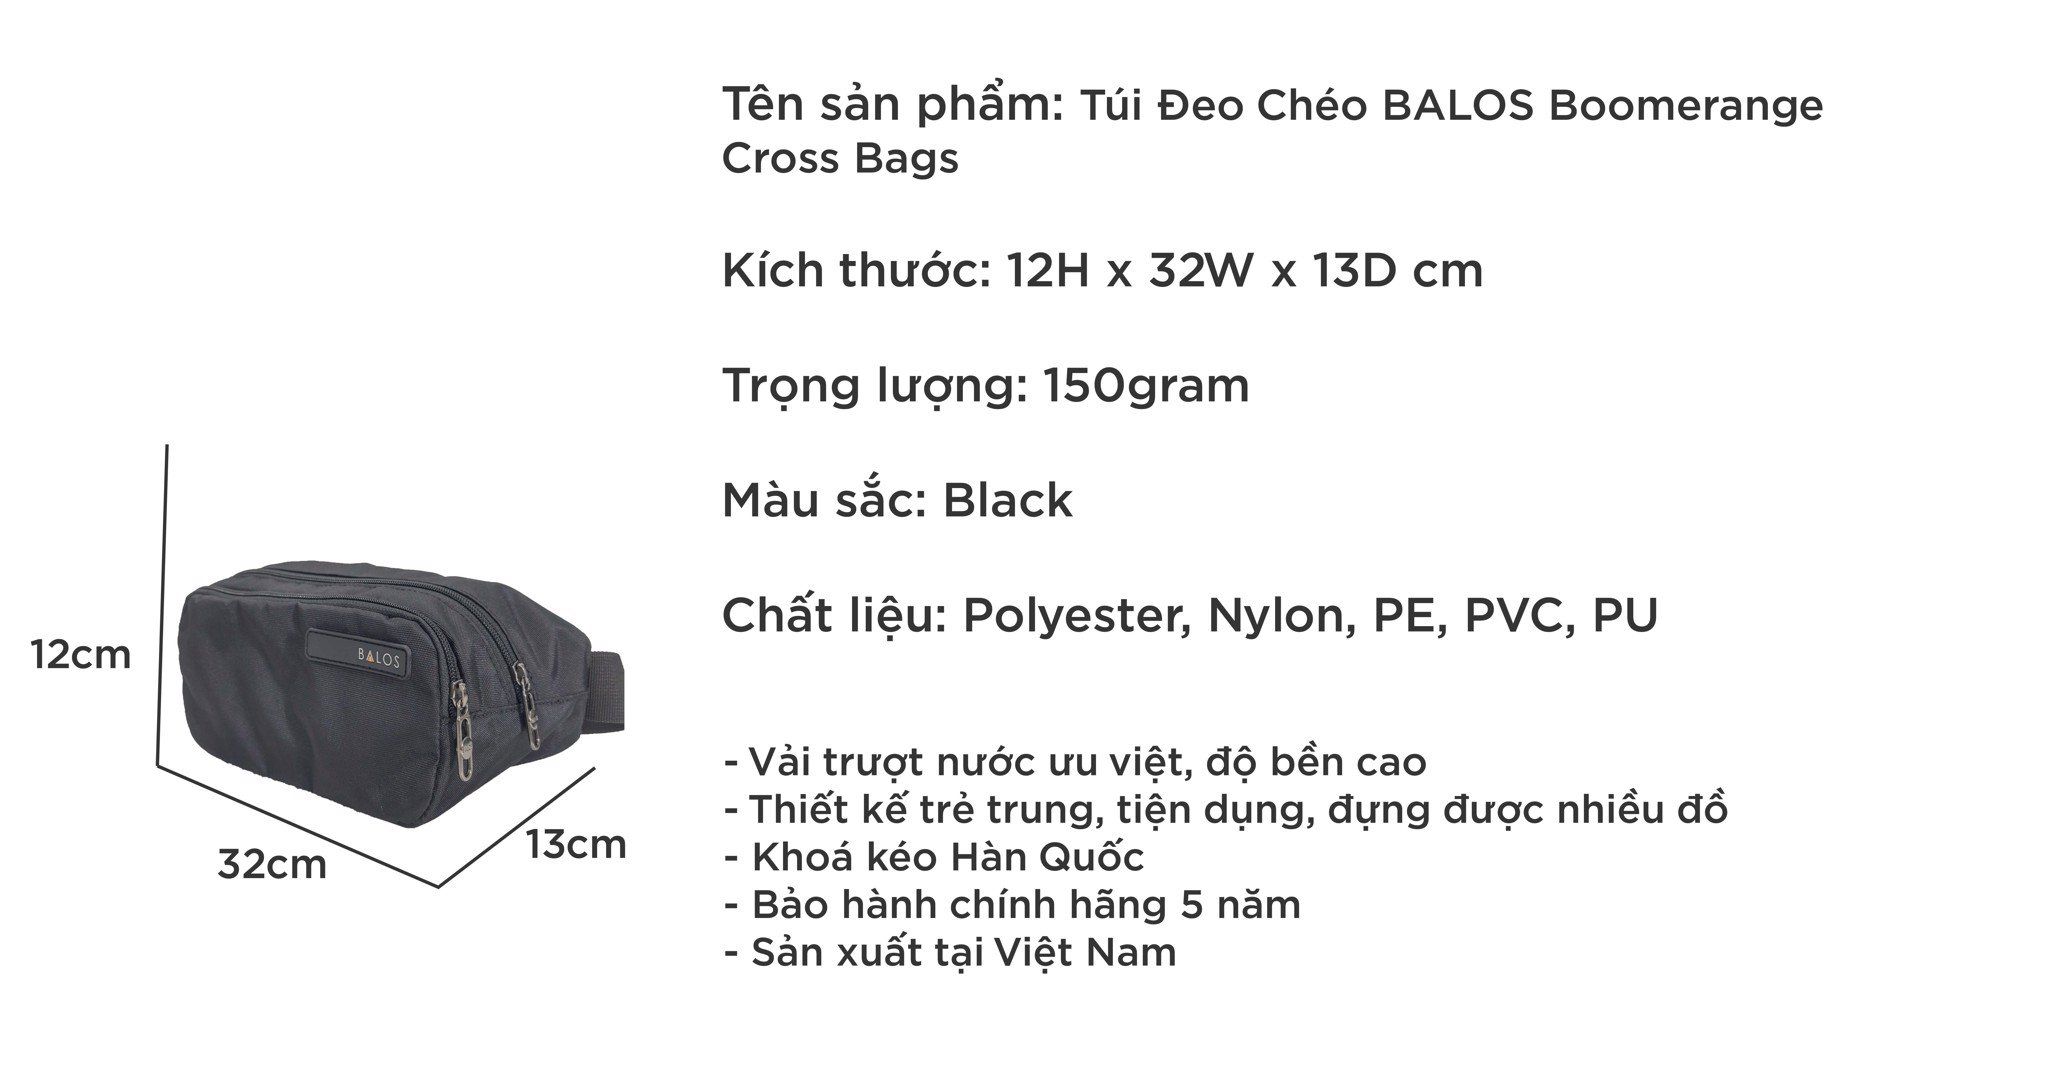  Balos BOOMERANGE Cross Bags Black - Túi đeo chéo thời trang 